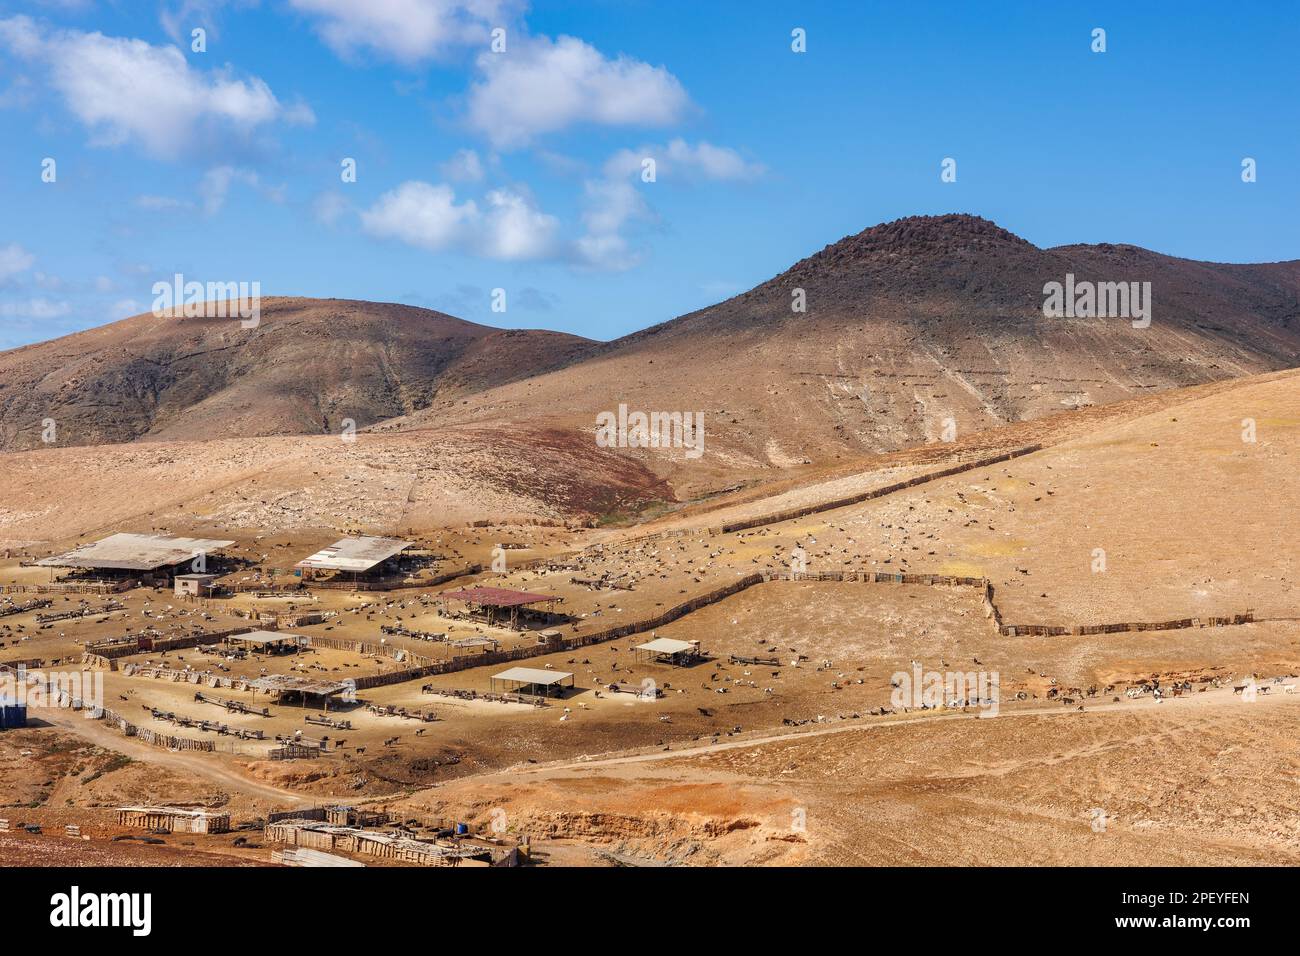 Die Ziegenhaltung ist auf der Insel Fuerteventura auf den Kanarischen Inseln weit verbreitet Stockfoto